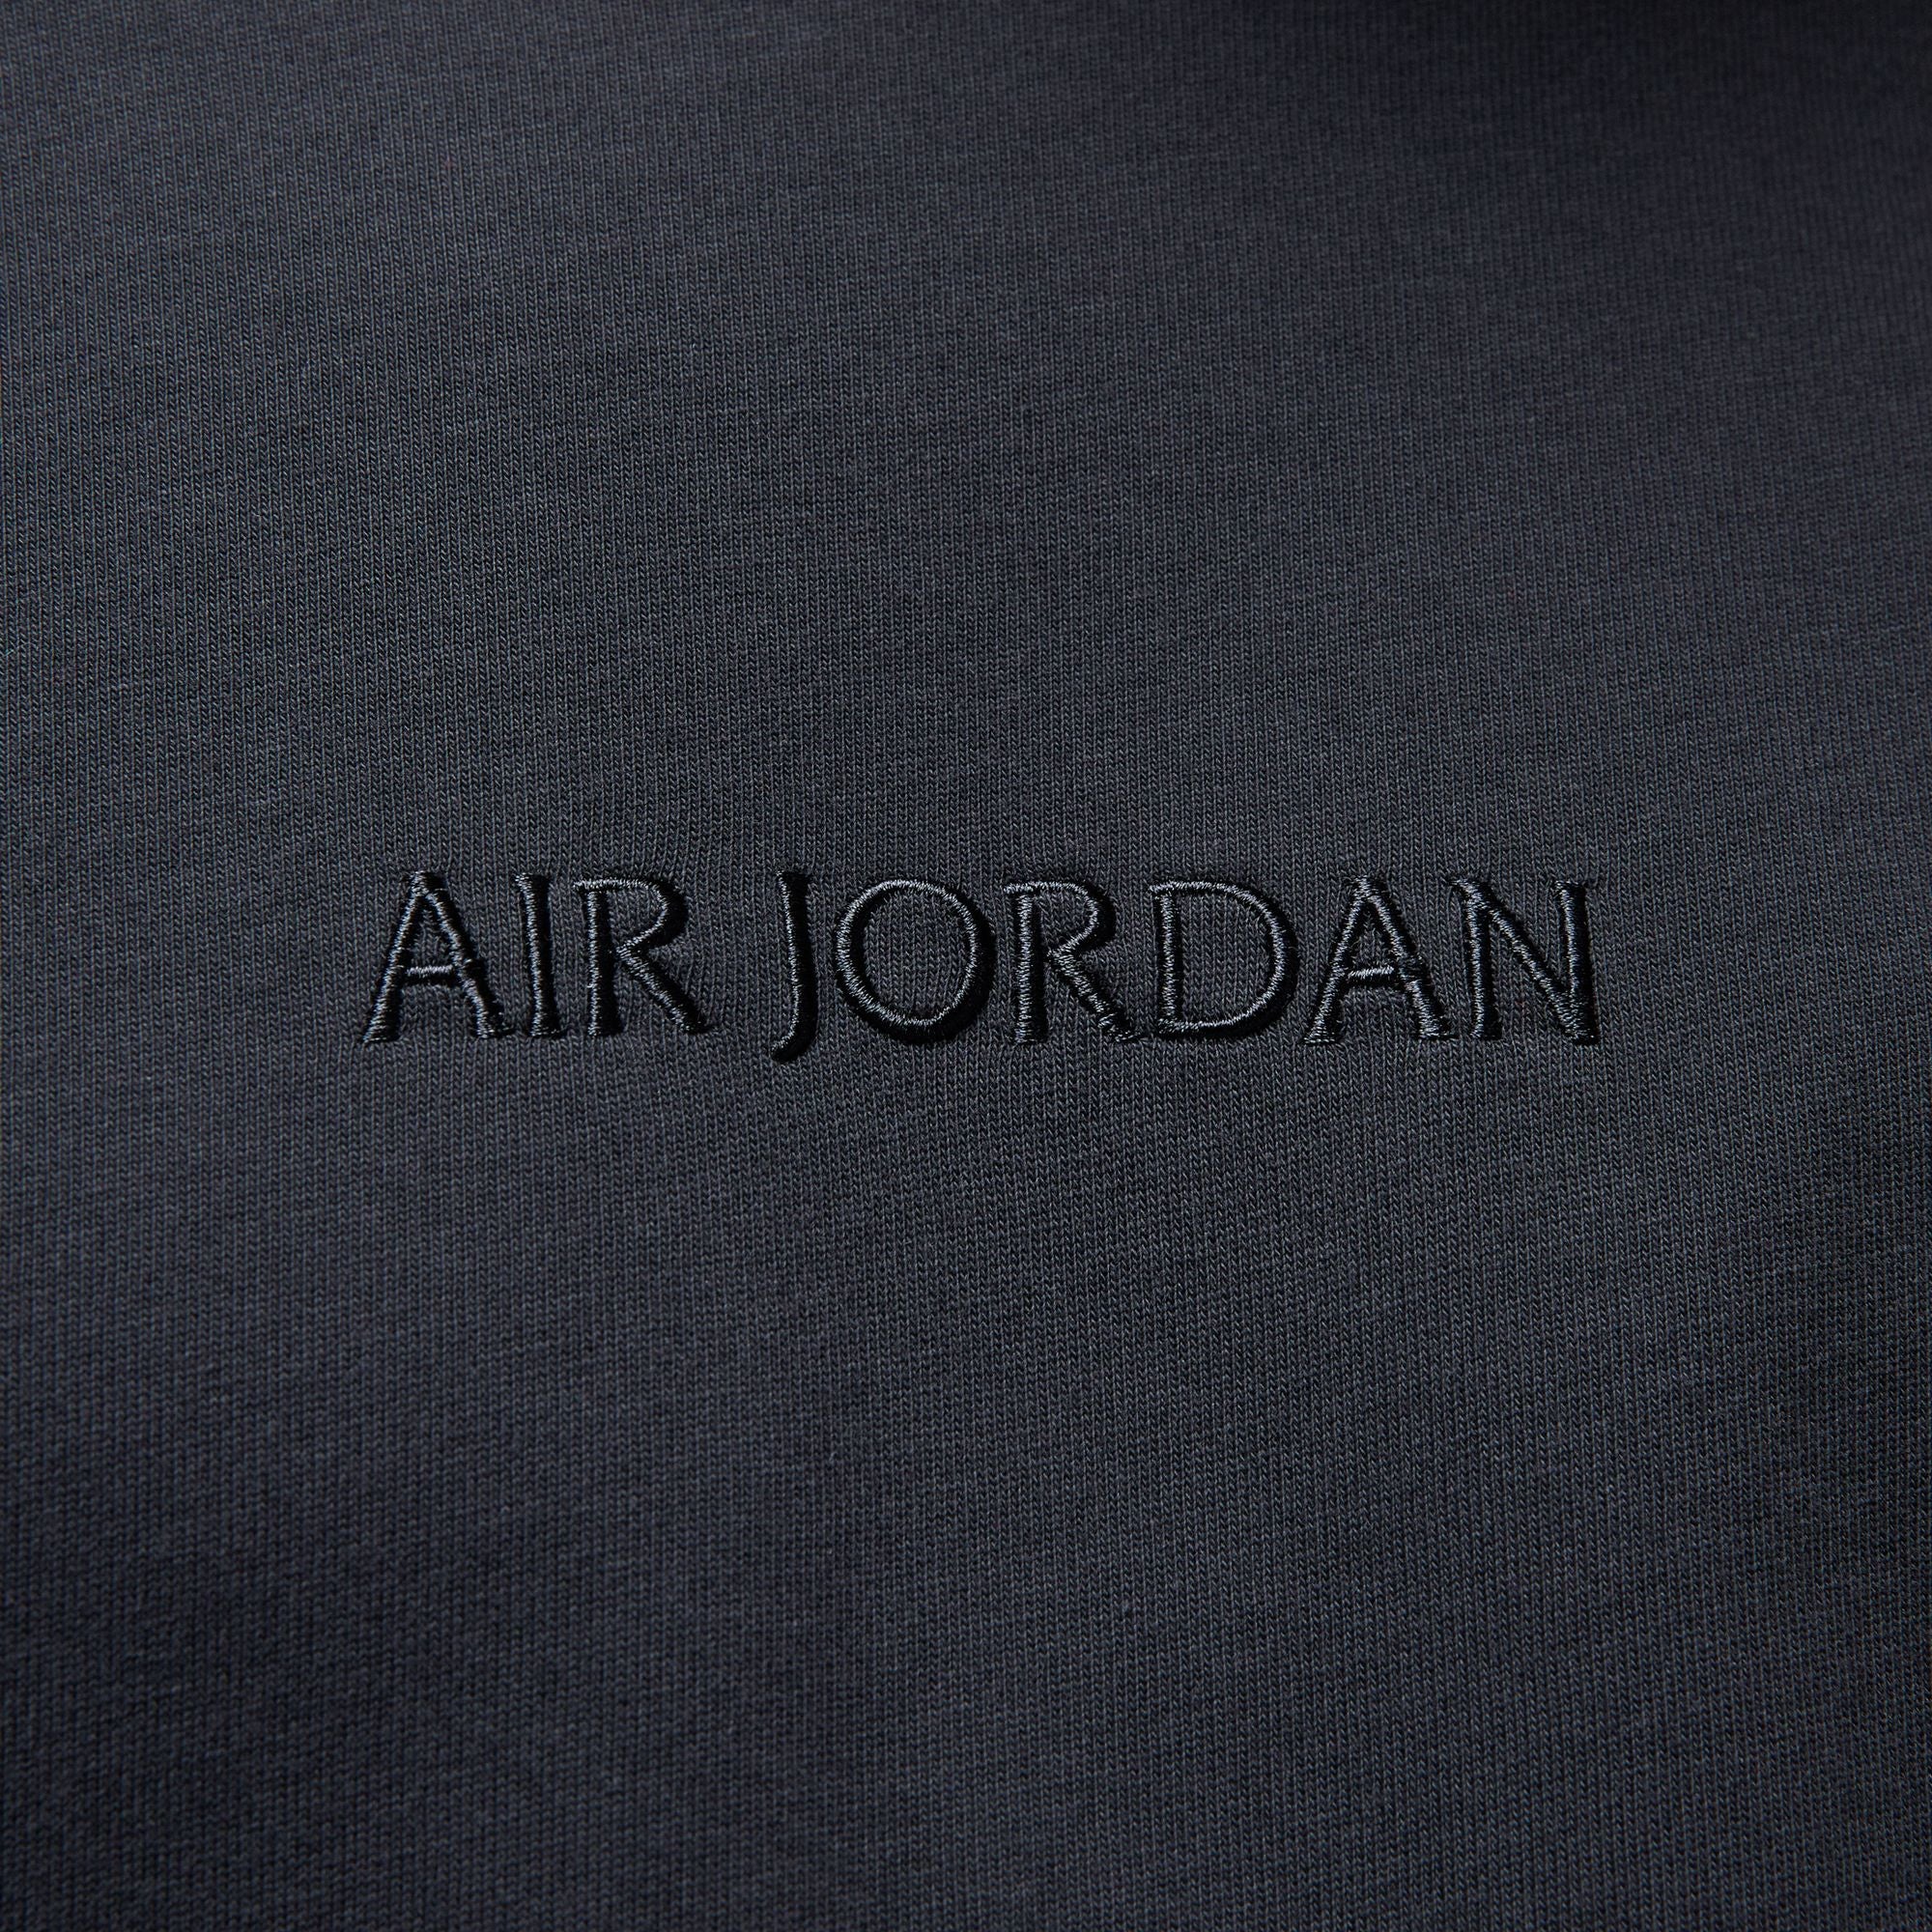 Air Jordan Wordmark Men's T-Shirt